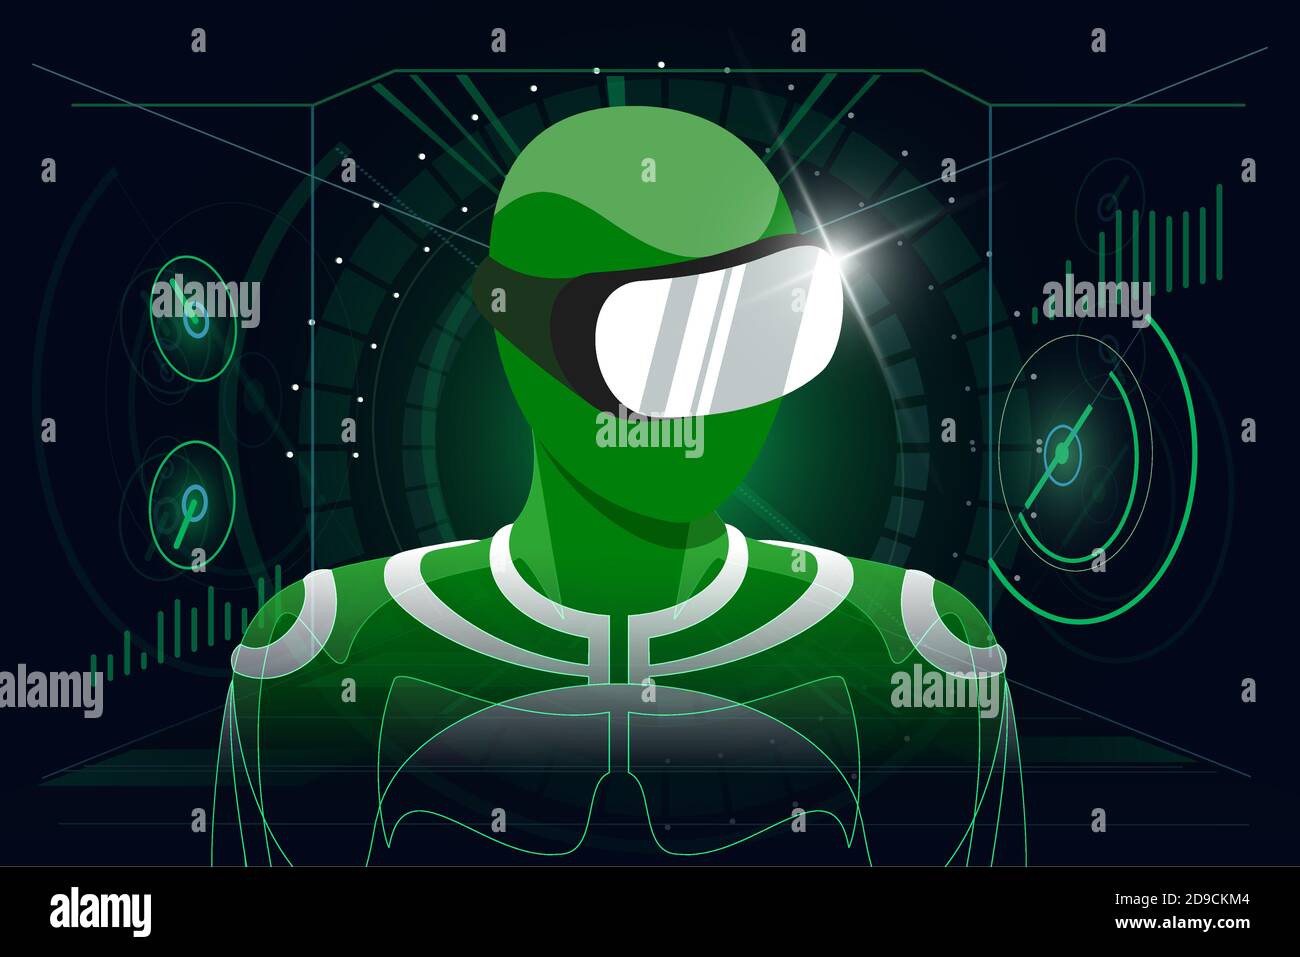 Concept de jeu de réalité virtuelle dans un micro-casque. Utilisateur en costume vert portant des lunettes VR casque sur un arrière-plan numérique abstrait style HUD. Illustration du vecteur eps futuriste Illustration de Vecteur